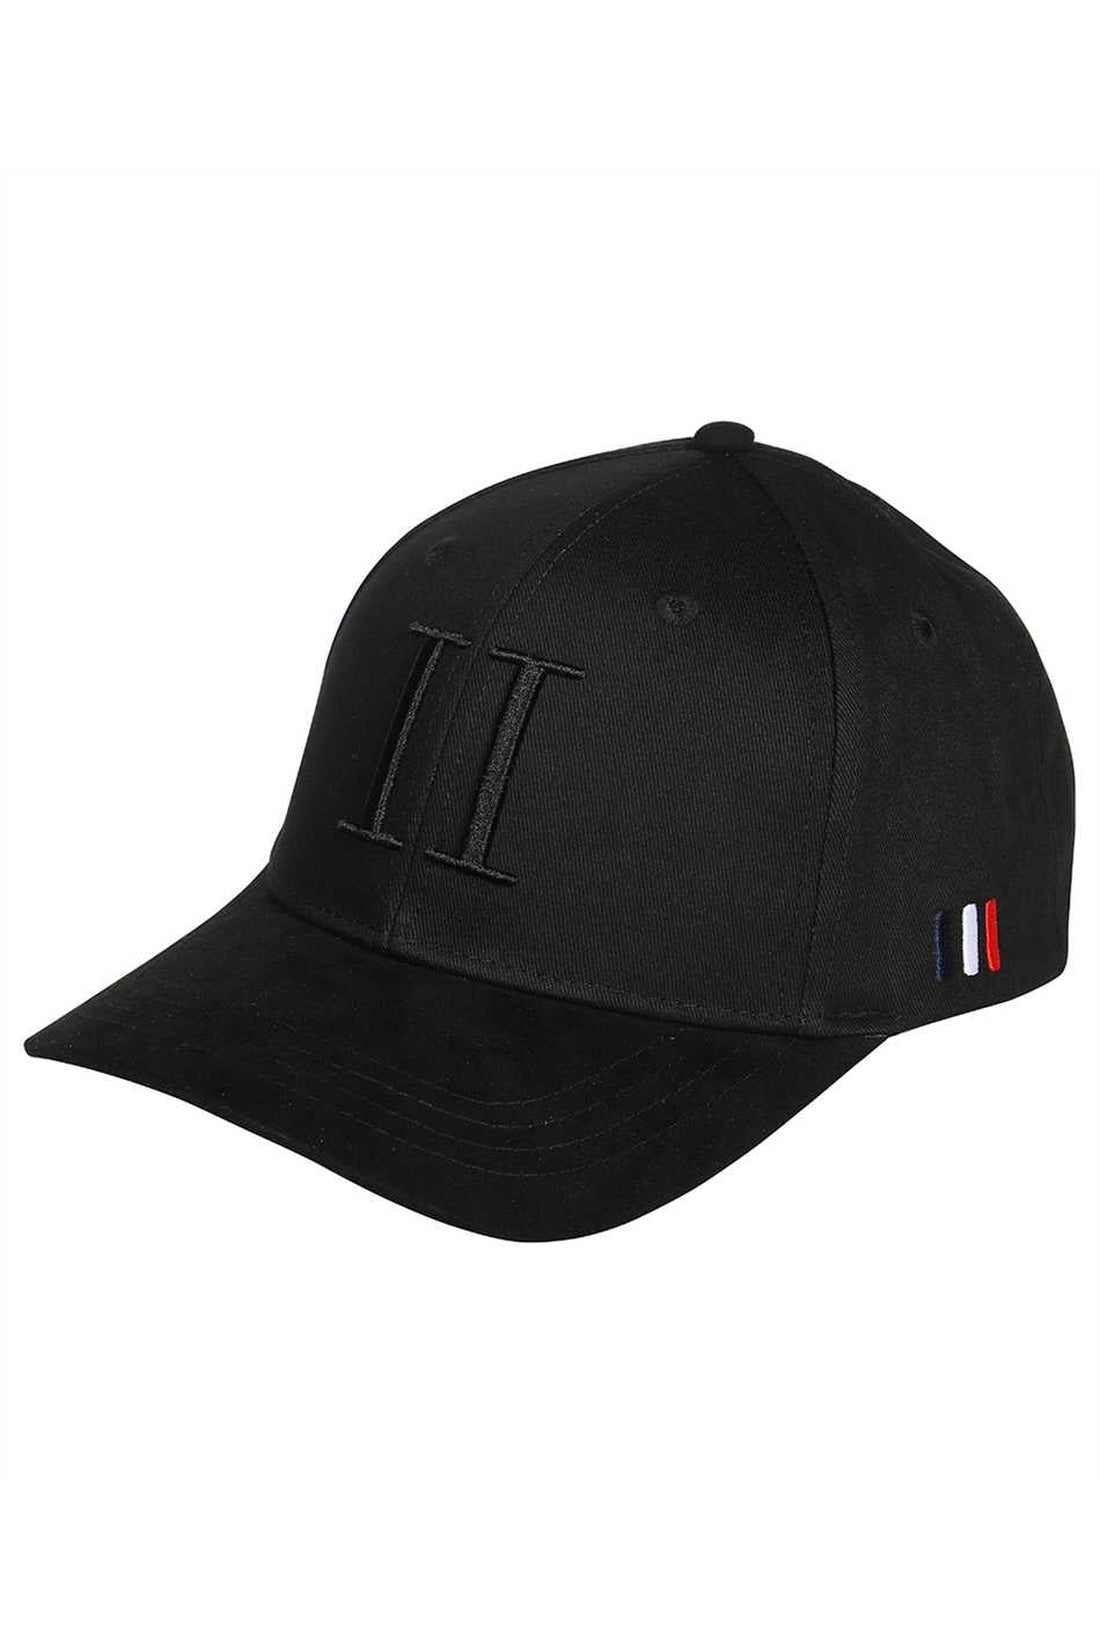 Les Deux-OUTLET-SALE-Logo baseball cap-ARCHIVIST